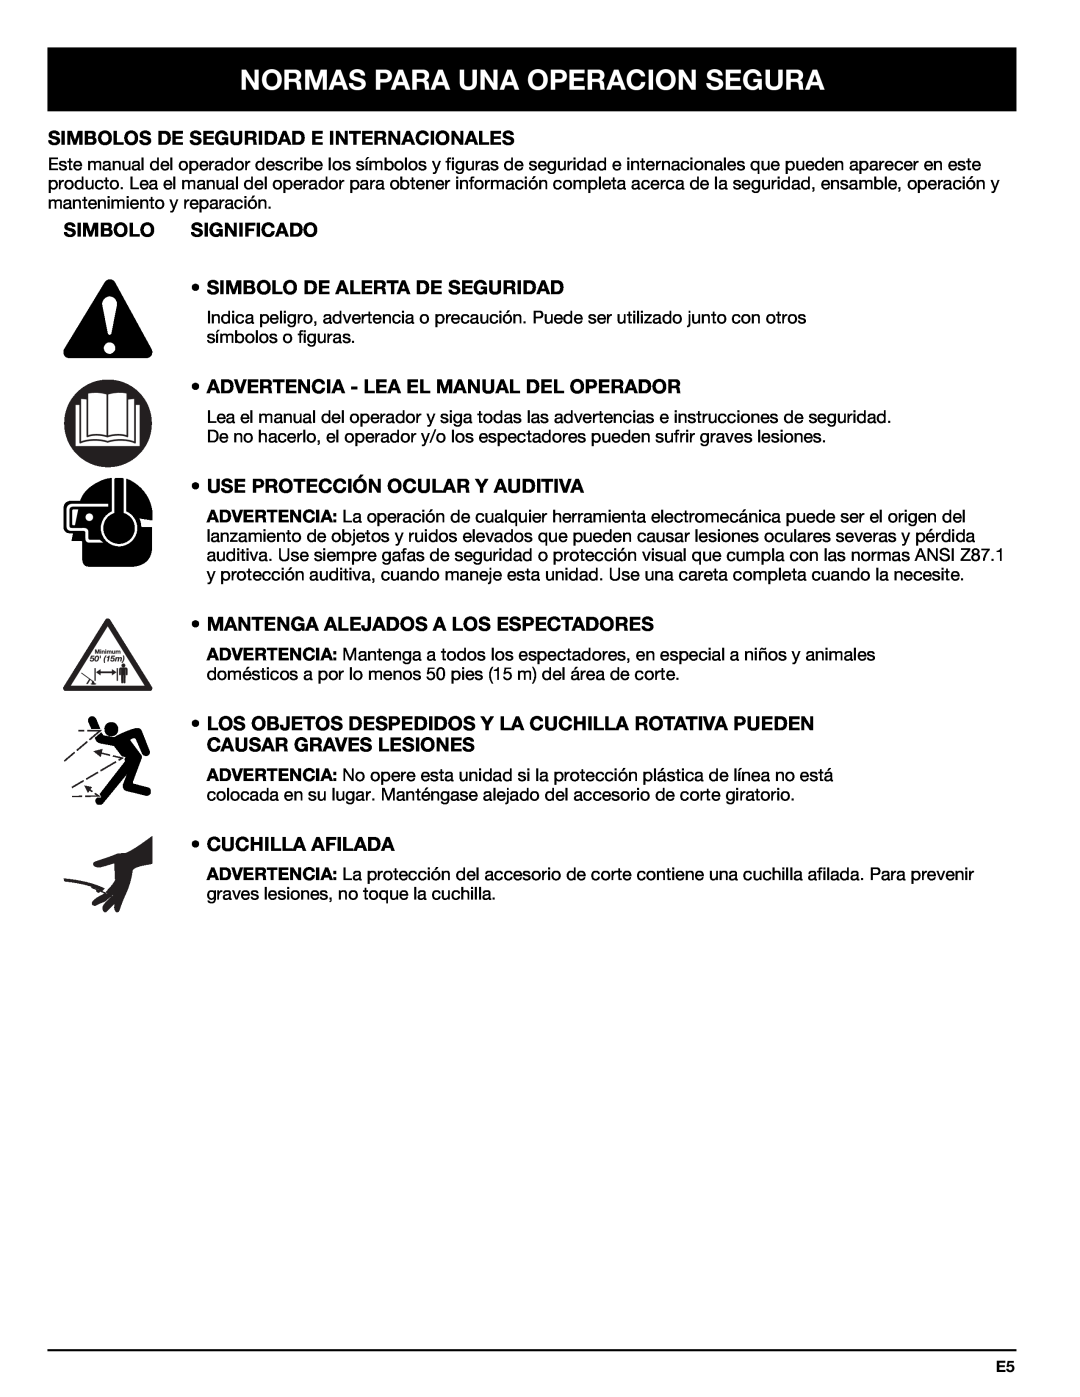 Troy-Bilt 769-00425A manual Simbolos De Seguridad E Internacionales, Simbolo Significado Simbolo De Alerta De Seguridad 